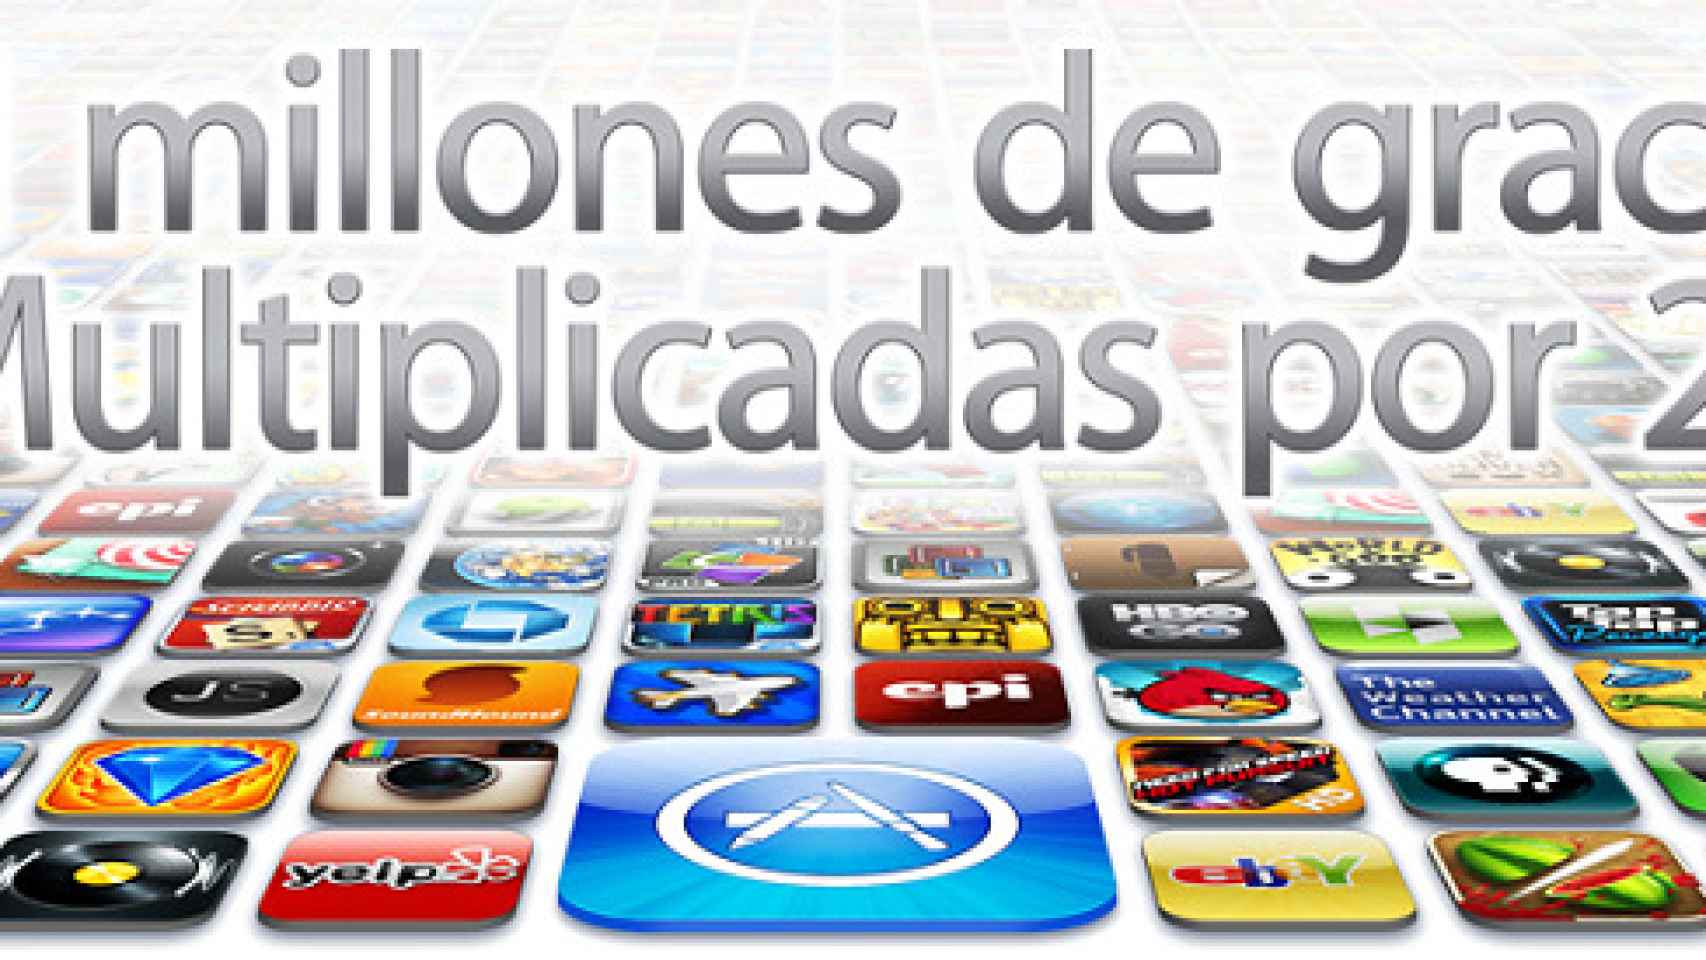 top-aplicaciones-itunes-03